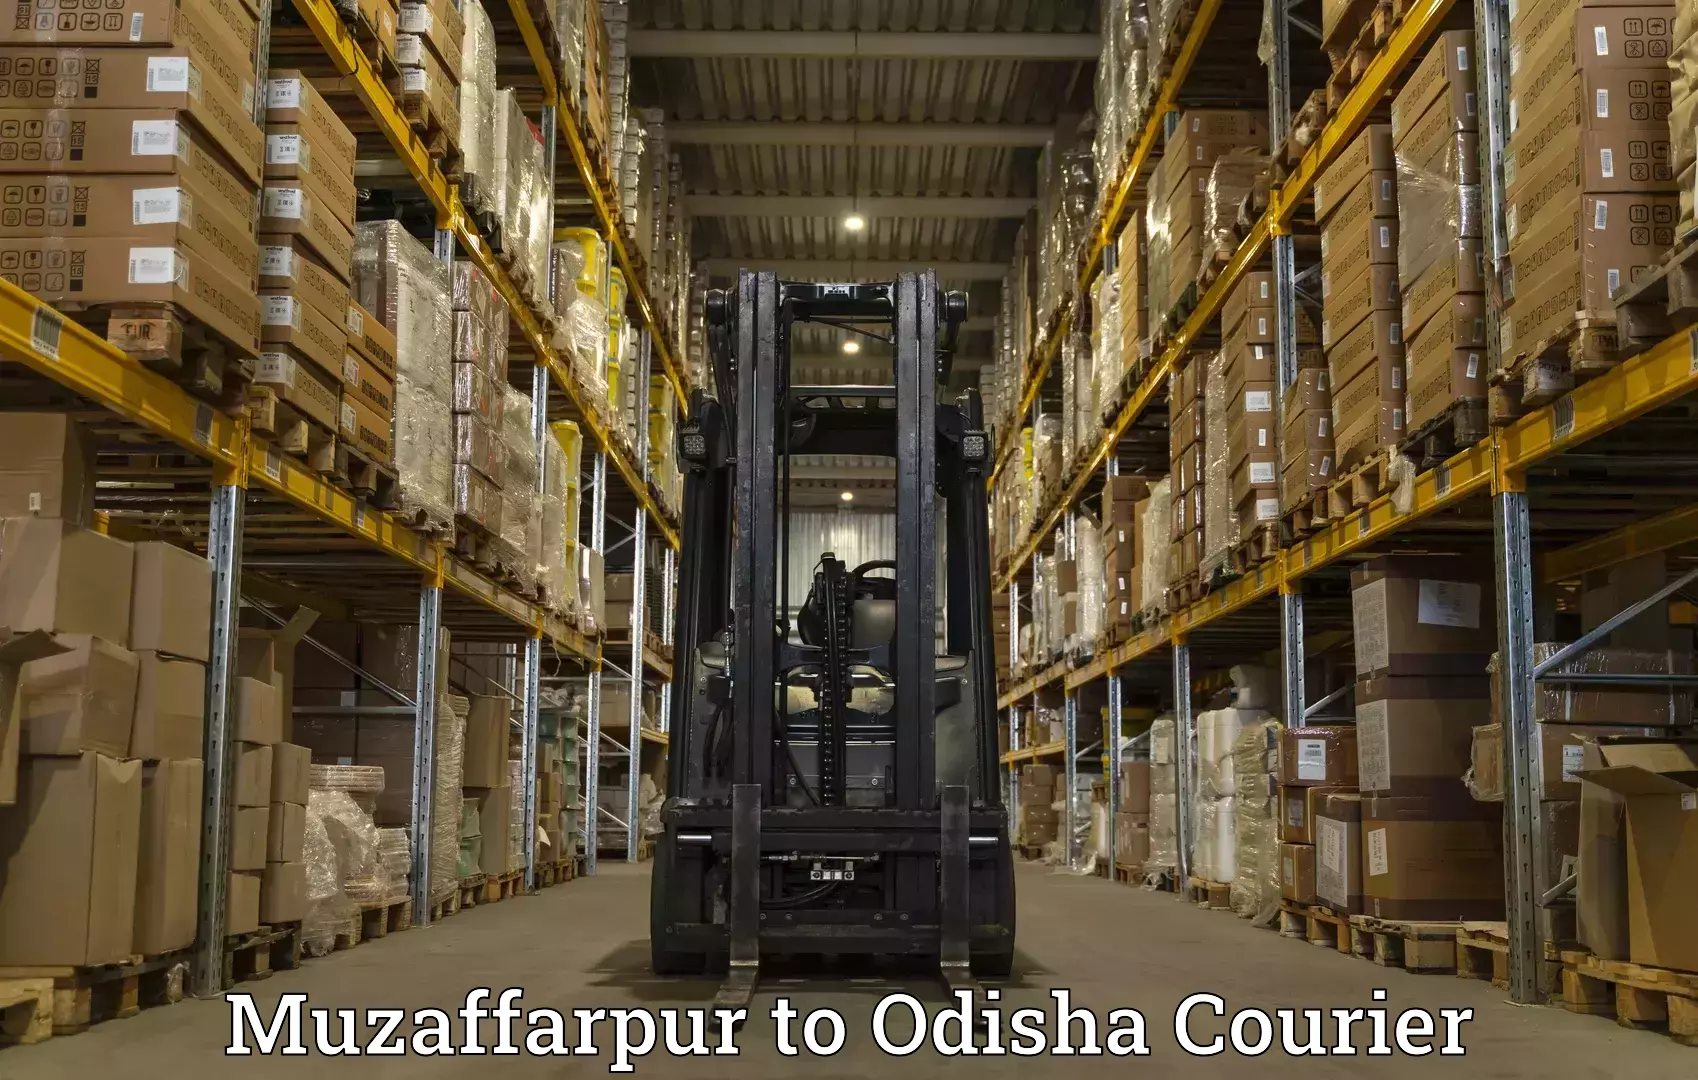 Courier service comparison in Muzaffarpur to Rayagada